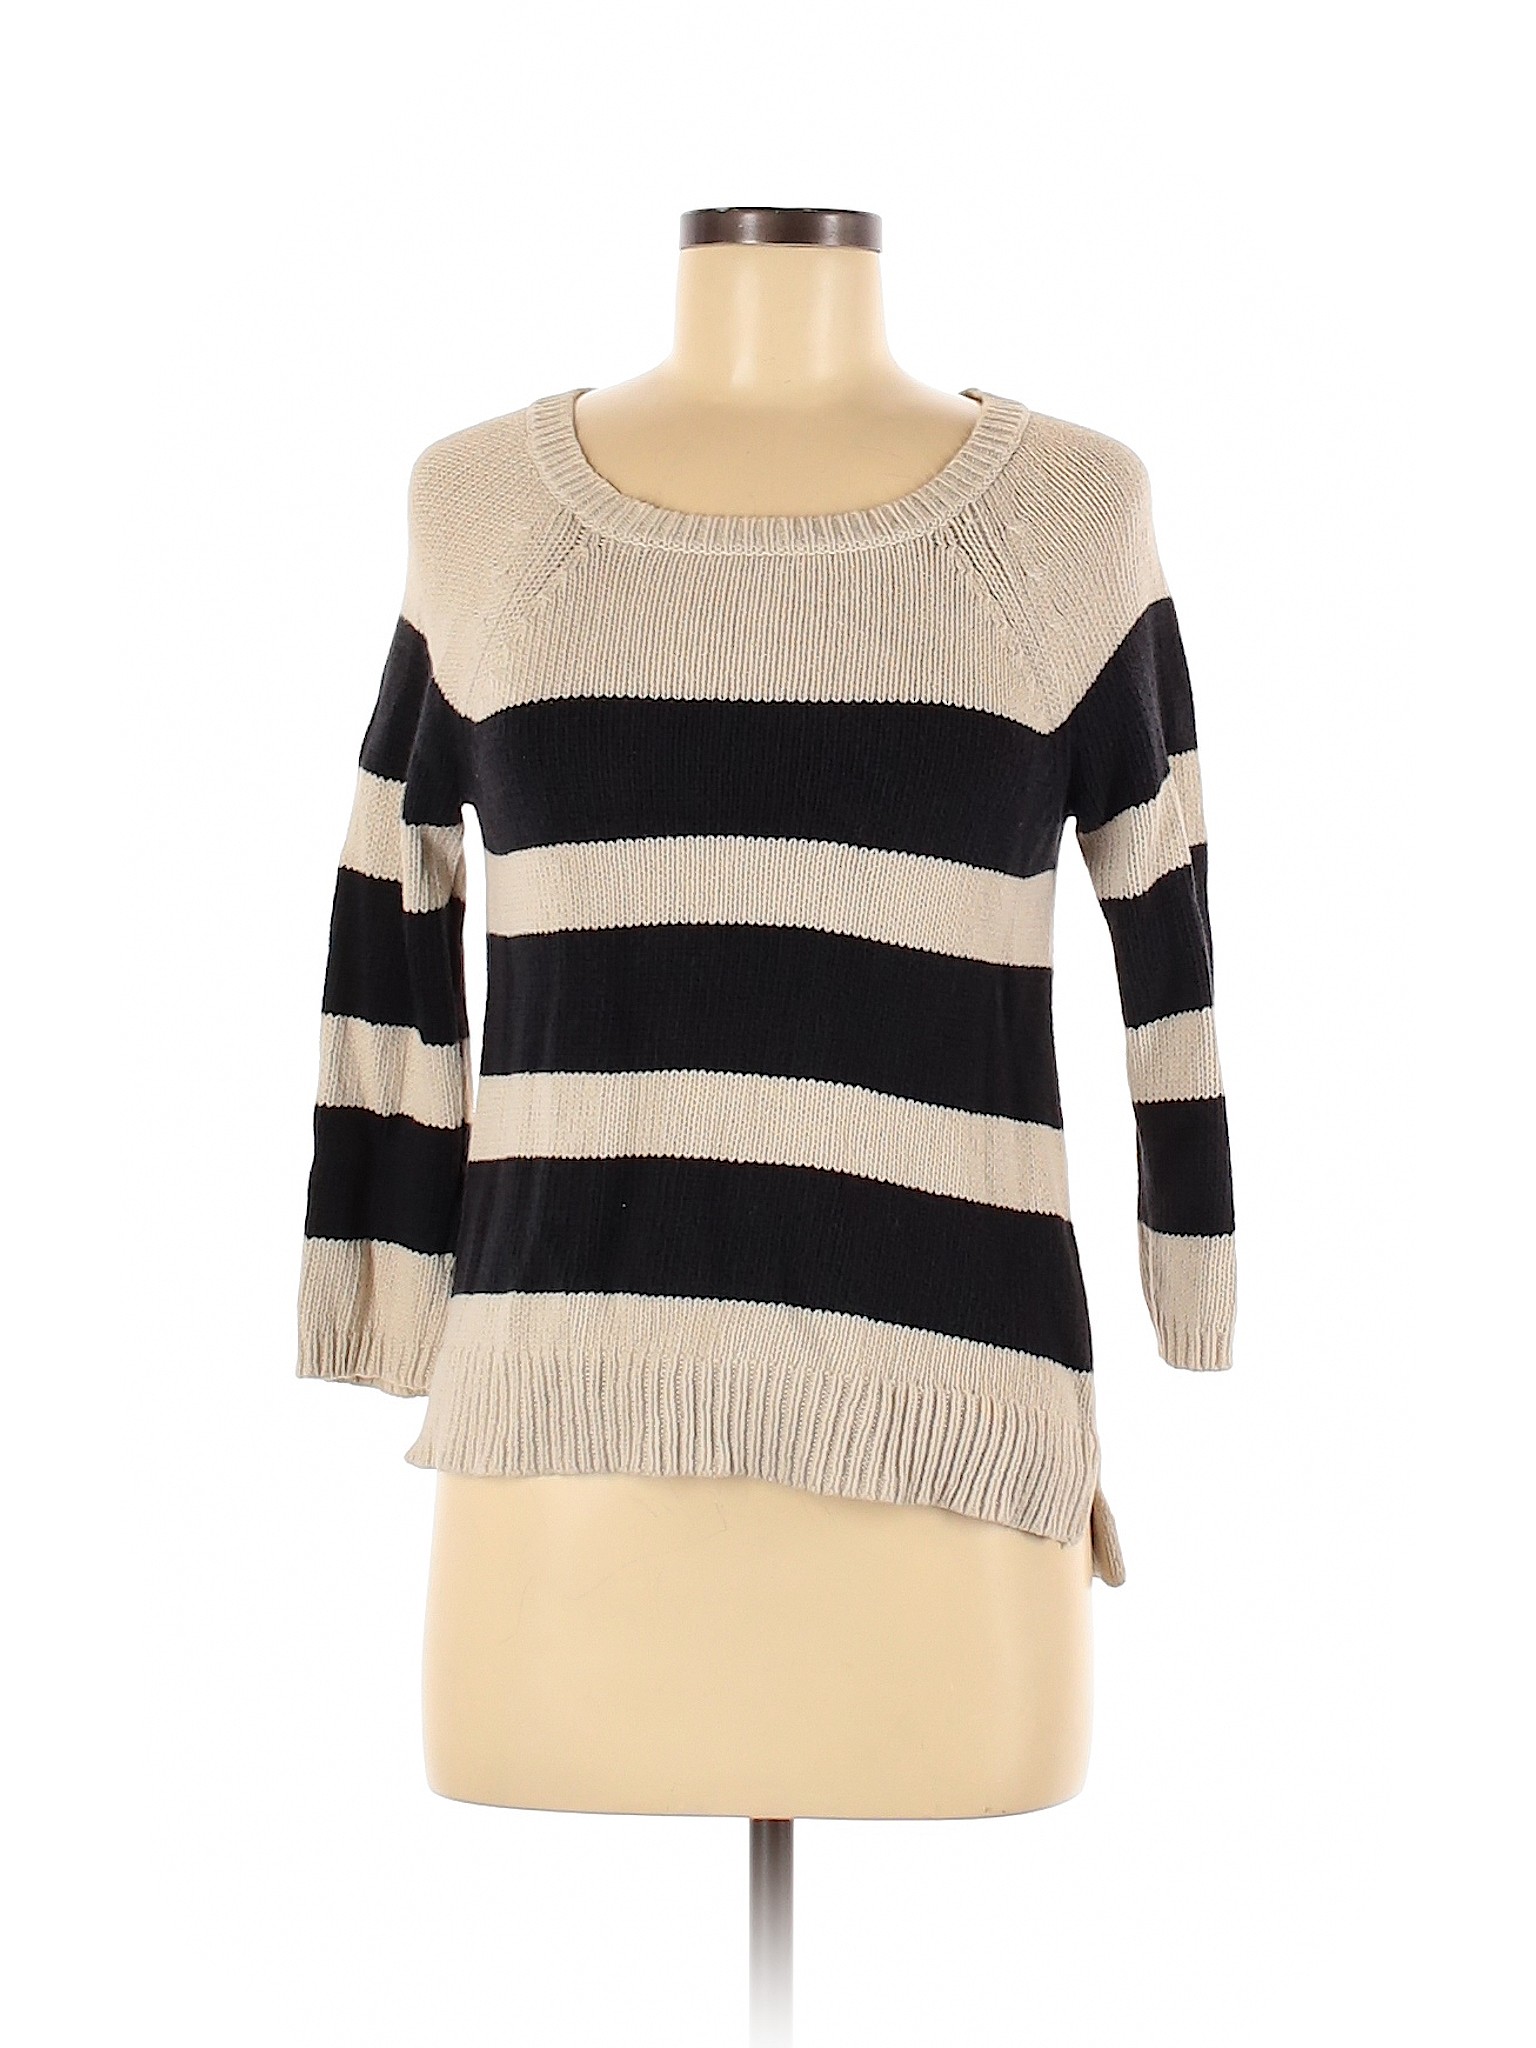 Ann Taylor LOFT Women Ivory Pullover Sweater S | eBay